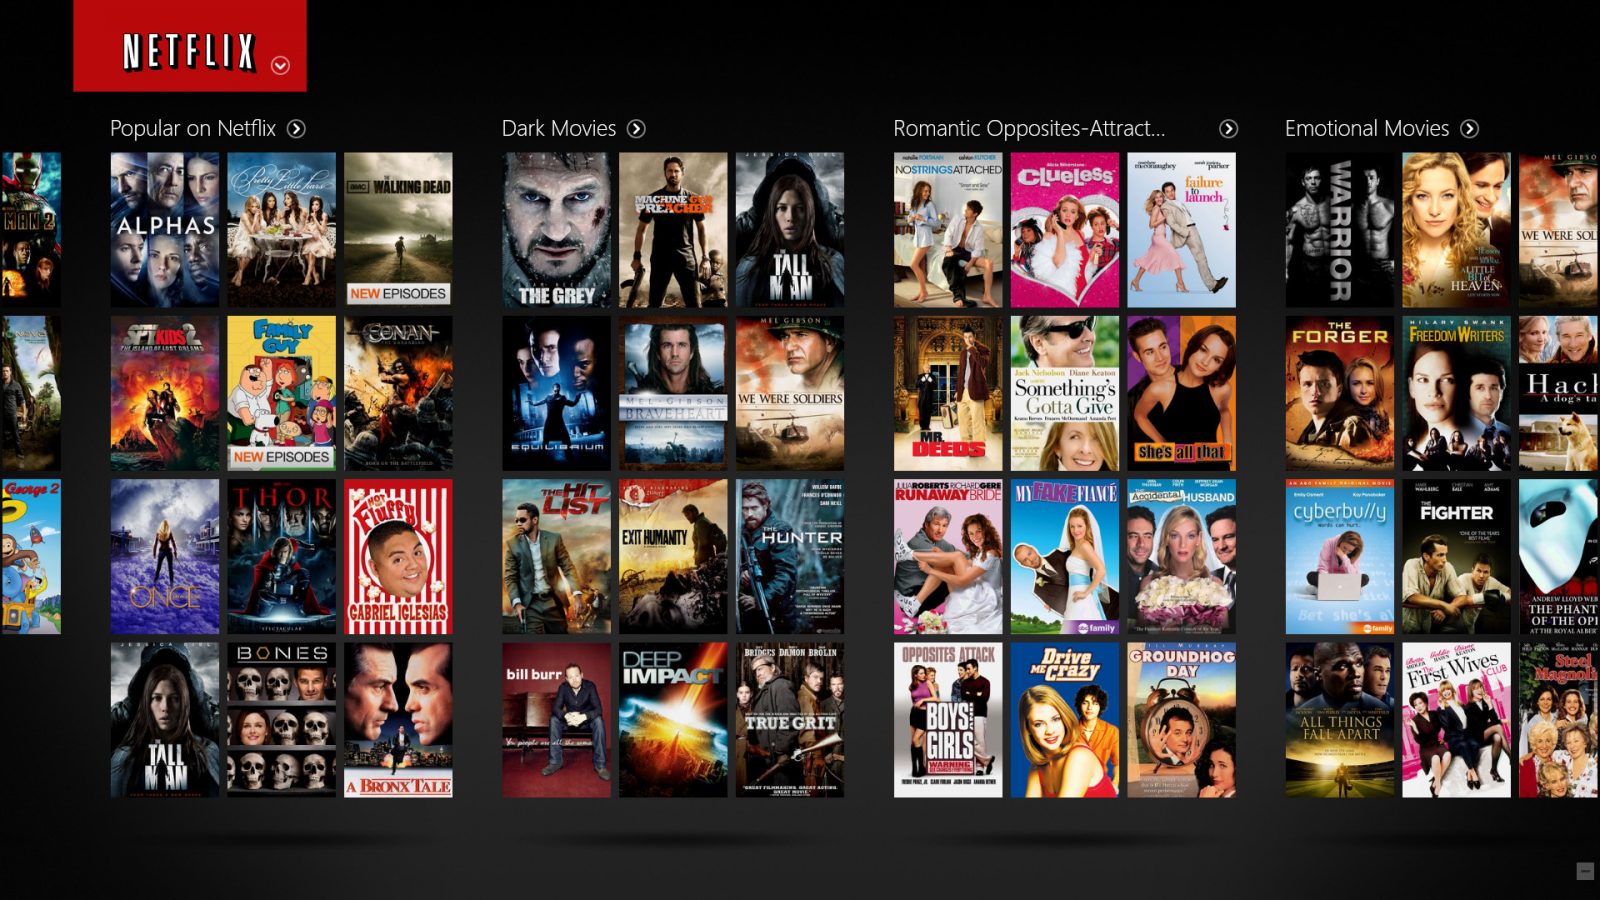 Os usuários do serviço podem criar uma lista personalizada de seus programas favoritos e aprender como ter melhores recomendações na Netflix.